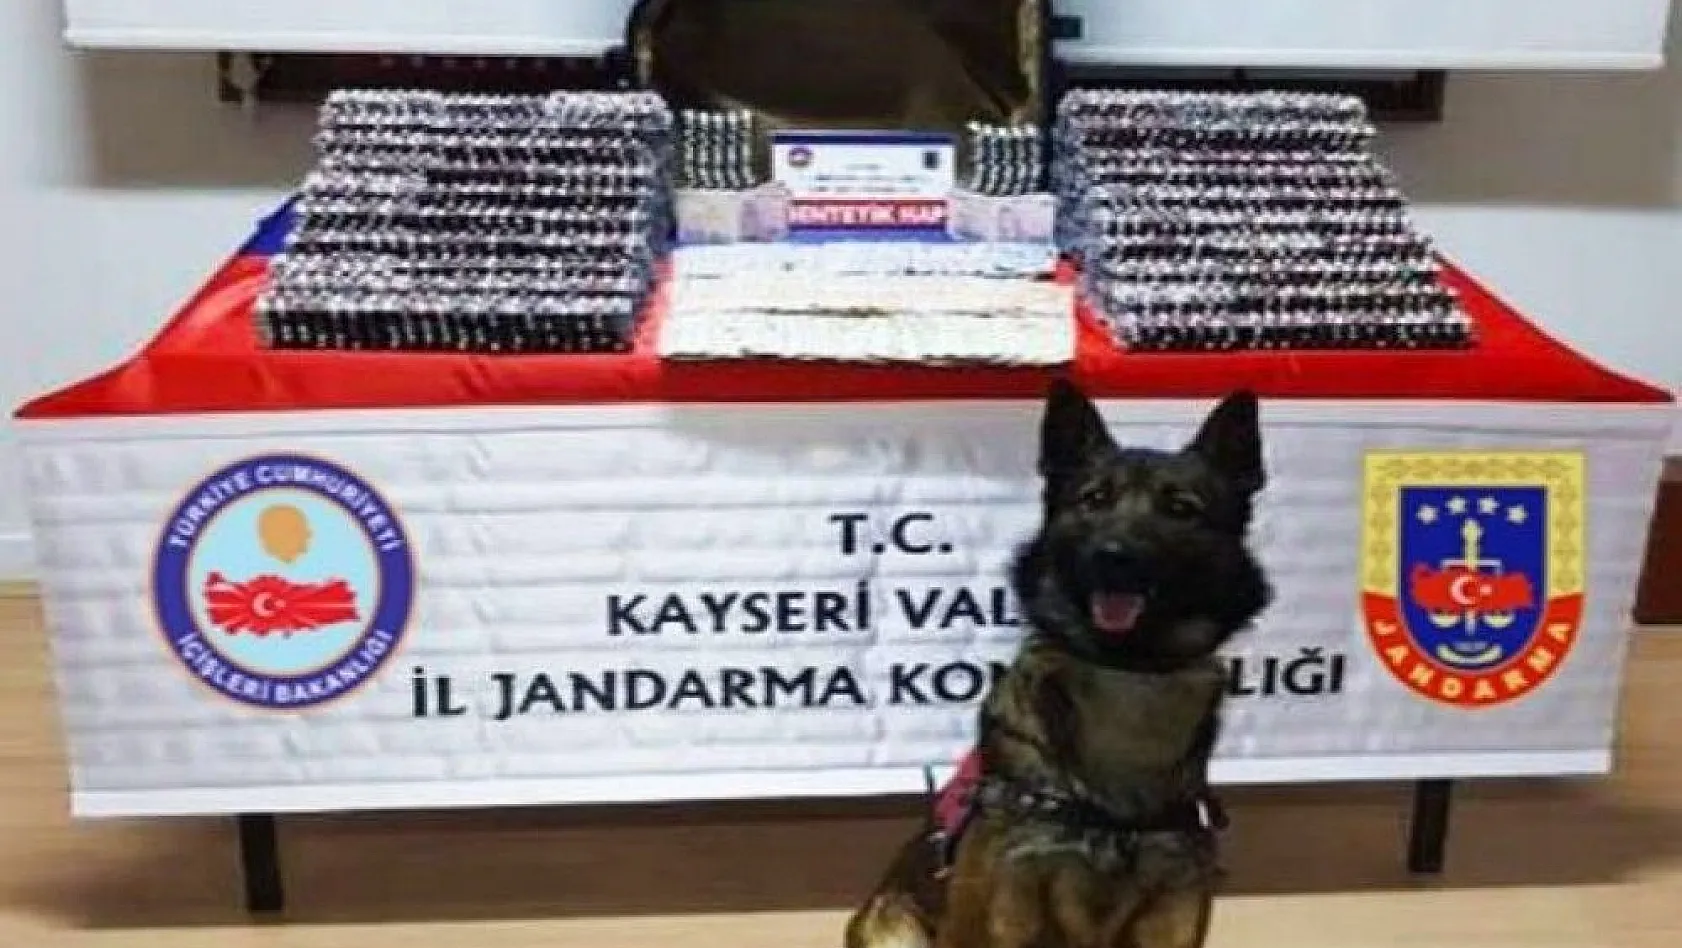 Kayseri'de piyasa değeri 400 bin TL olan uyuşturucu hap ele geçirildi